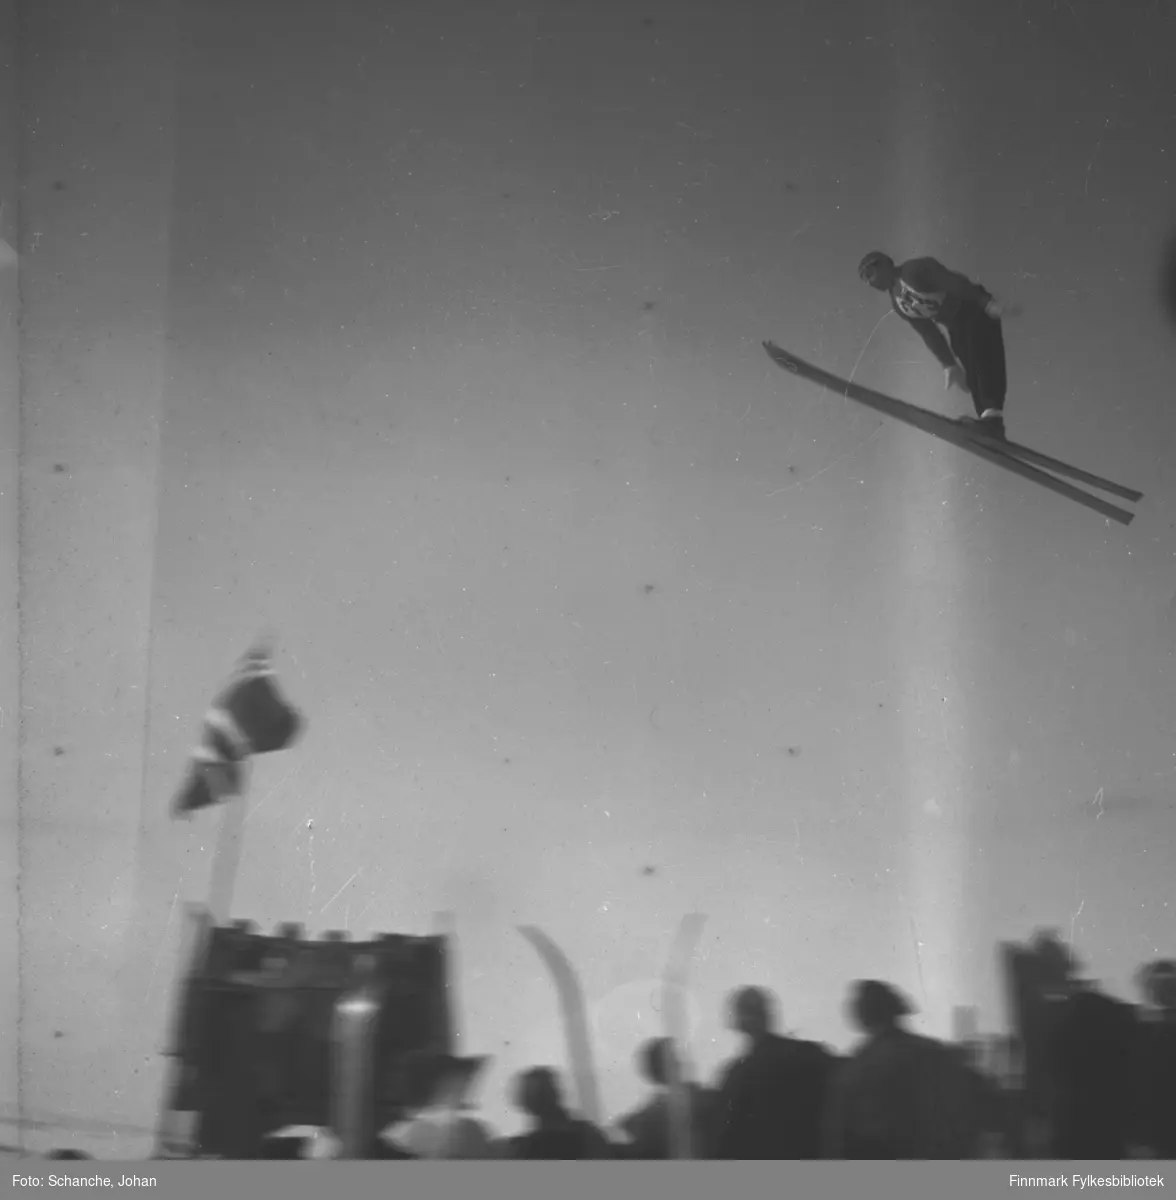 Kretsrennet på ski , Vadsø 1946. Harald Thunstad, Kirkenes hopper. Det står folk i bakken.